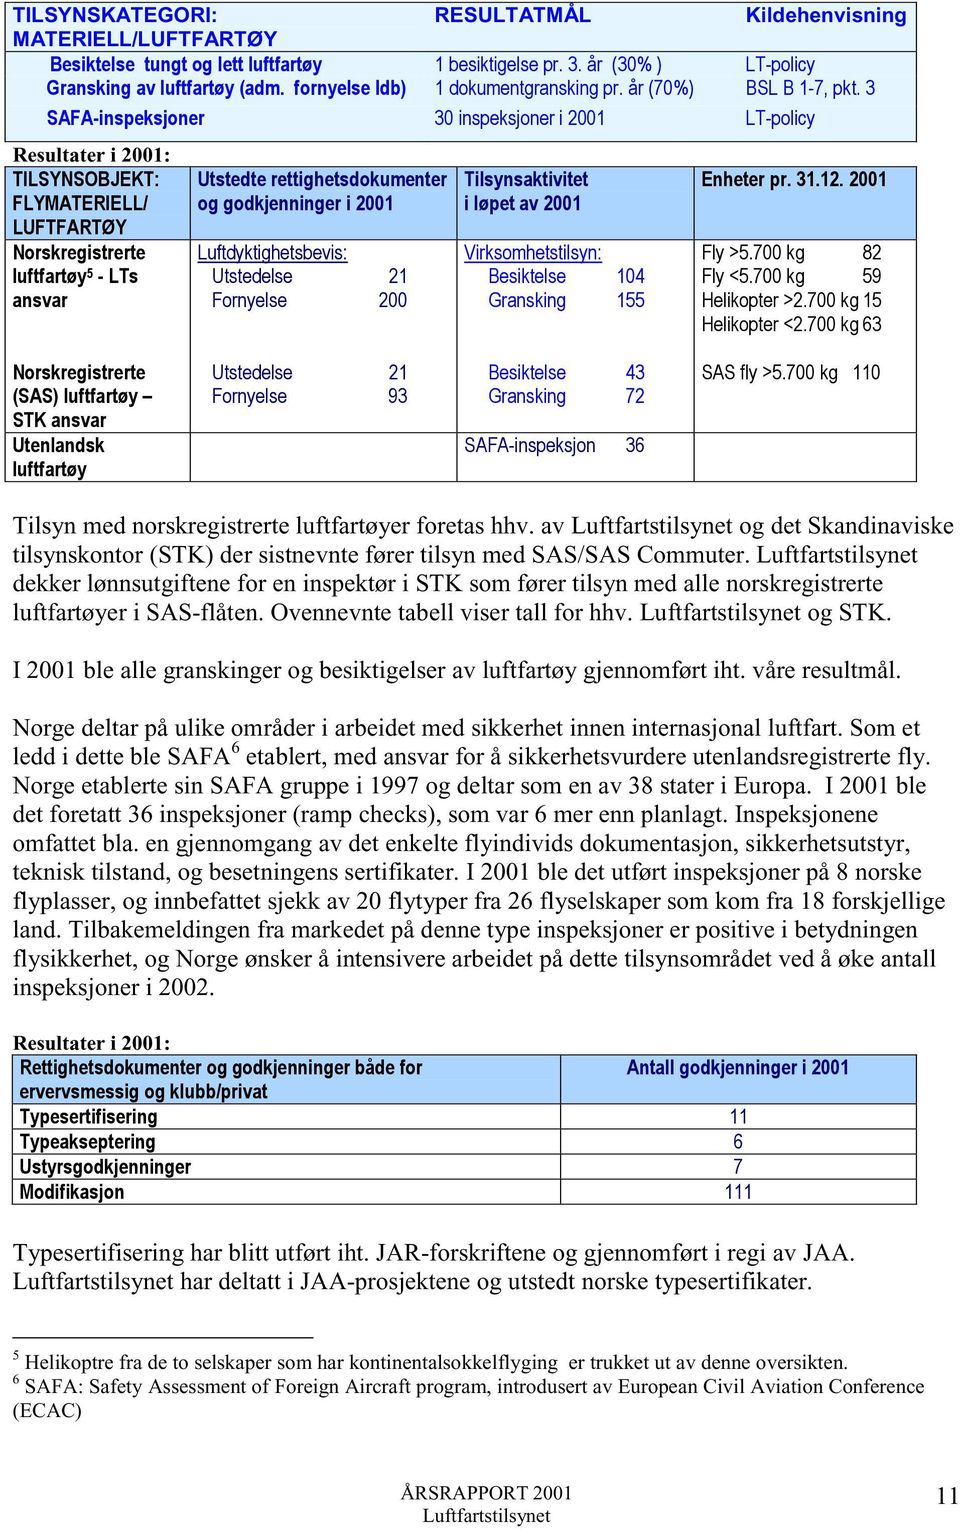 3 SAFA-inspeksjoner 30 inspeksjoner i 2001 LT-policy Resultater i 2001: TILSYNSOBJEKT: FLYMATERIELL/ LUFTFARTØY Norskregistrerte luftfartøy 5 - LTs ansvar Utstedte rettighetsdokumenter og